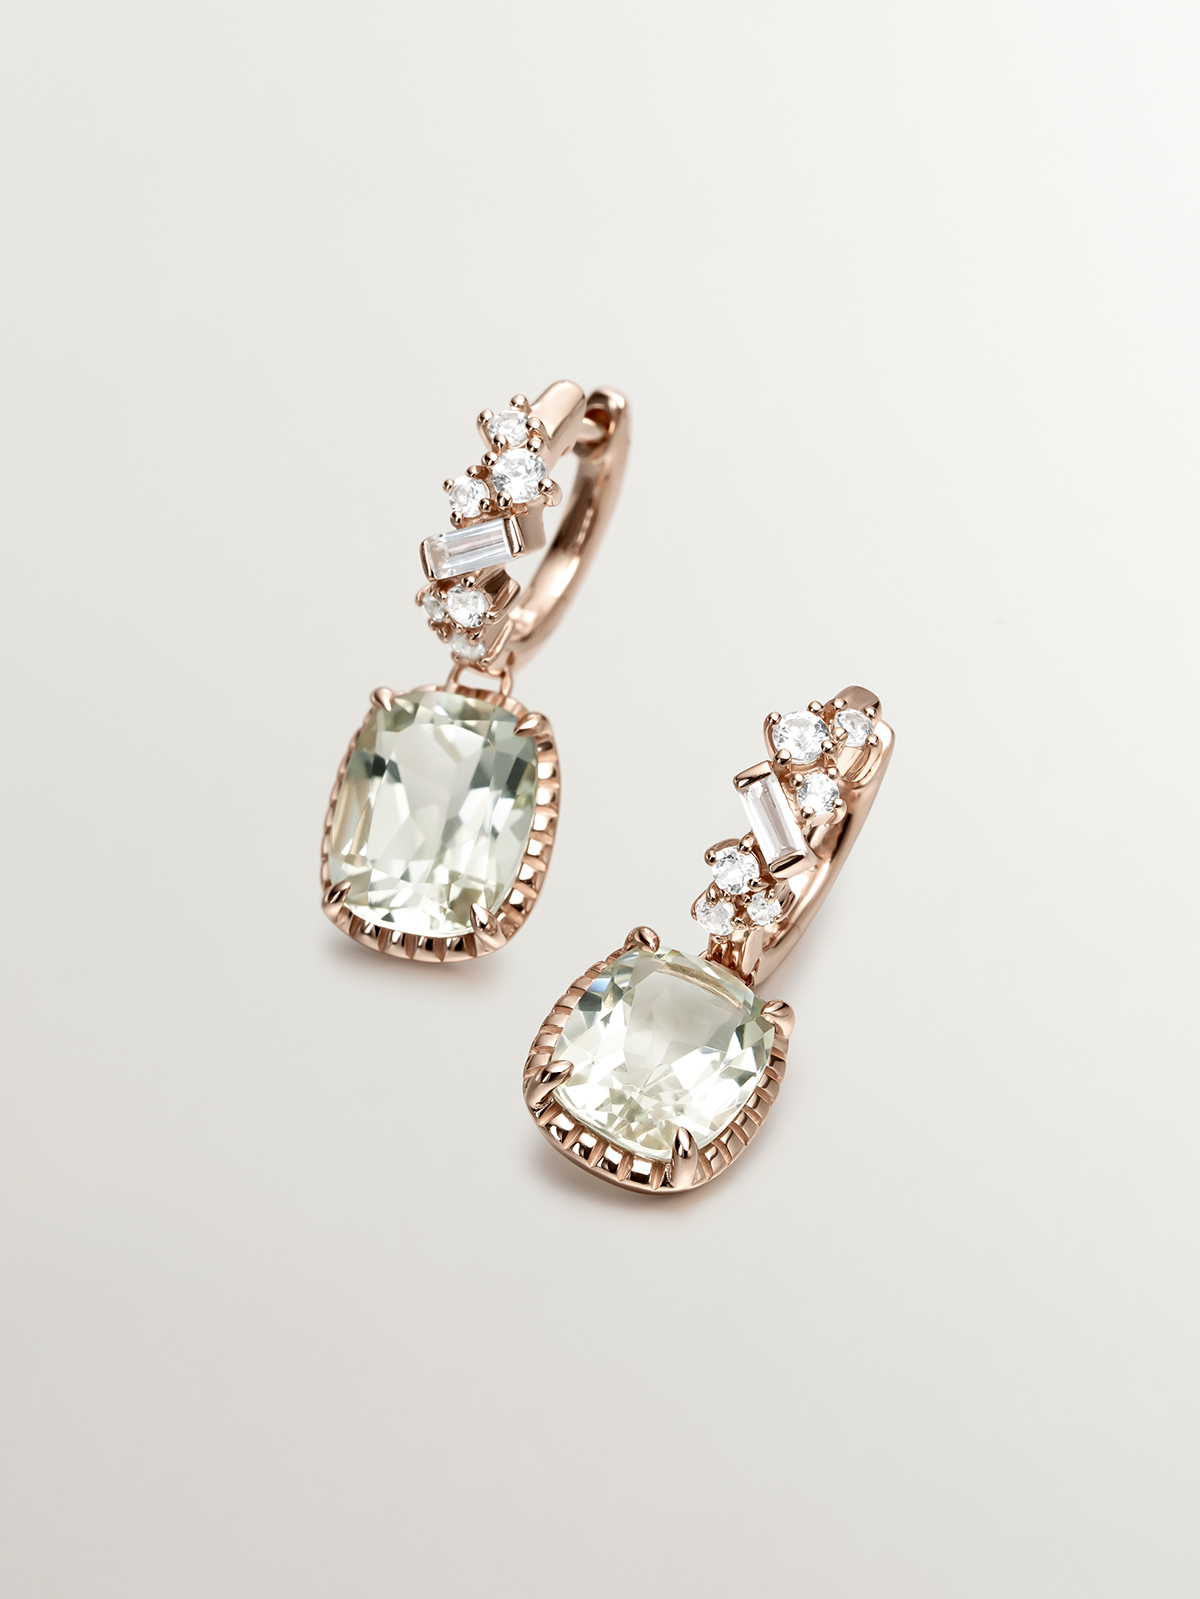 Boucles d'oreilles créoles en argent 925 plaqué or rose 18K avec quartz verts et topazes bleu suisse.